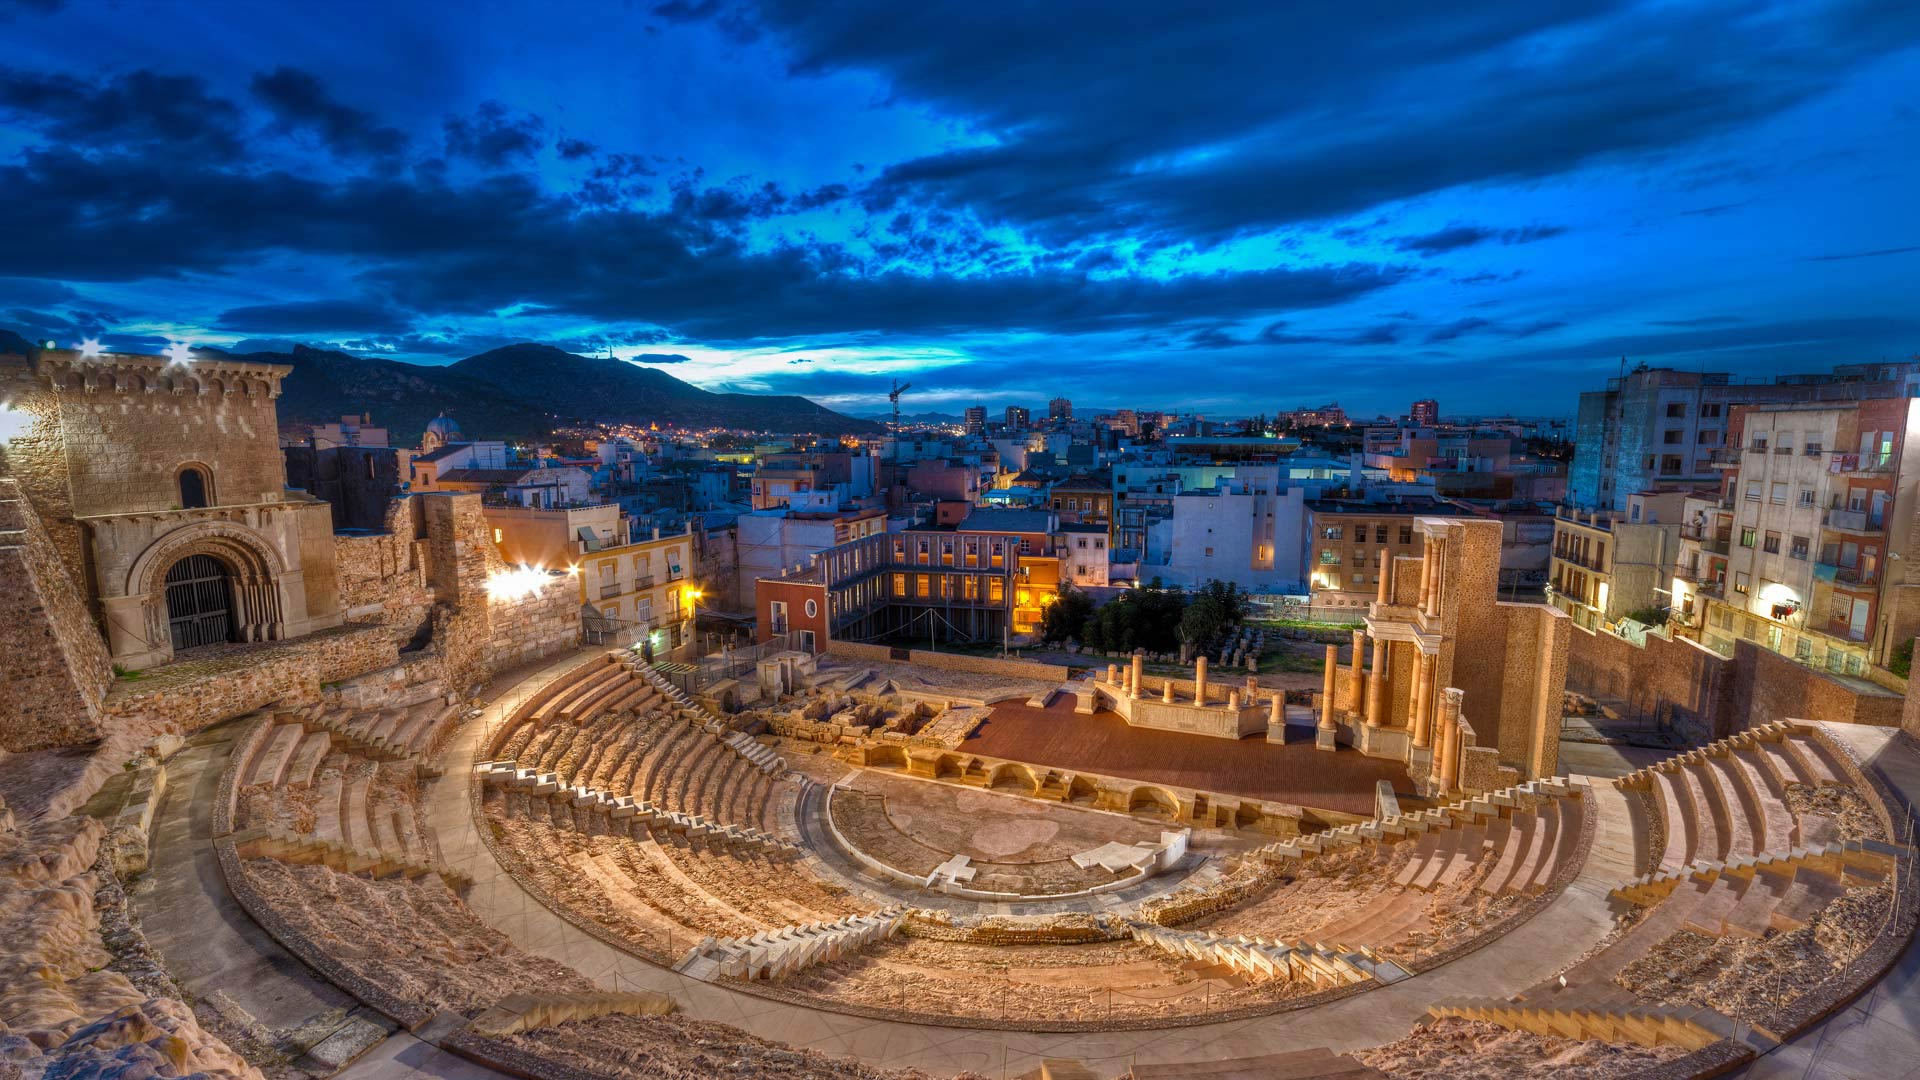 Roman theater of Cartagena, Spain